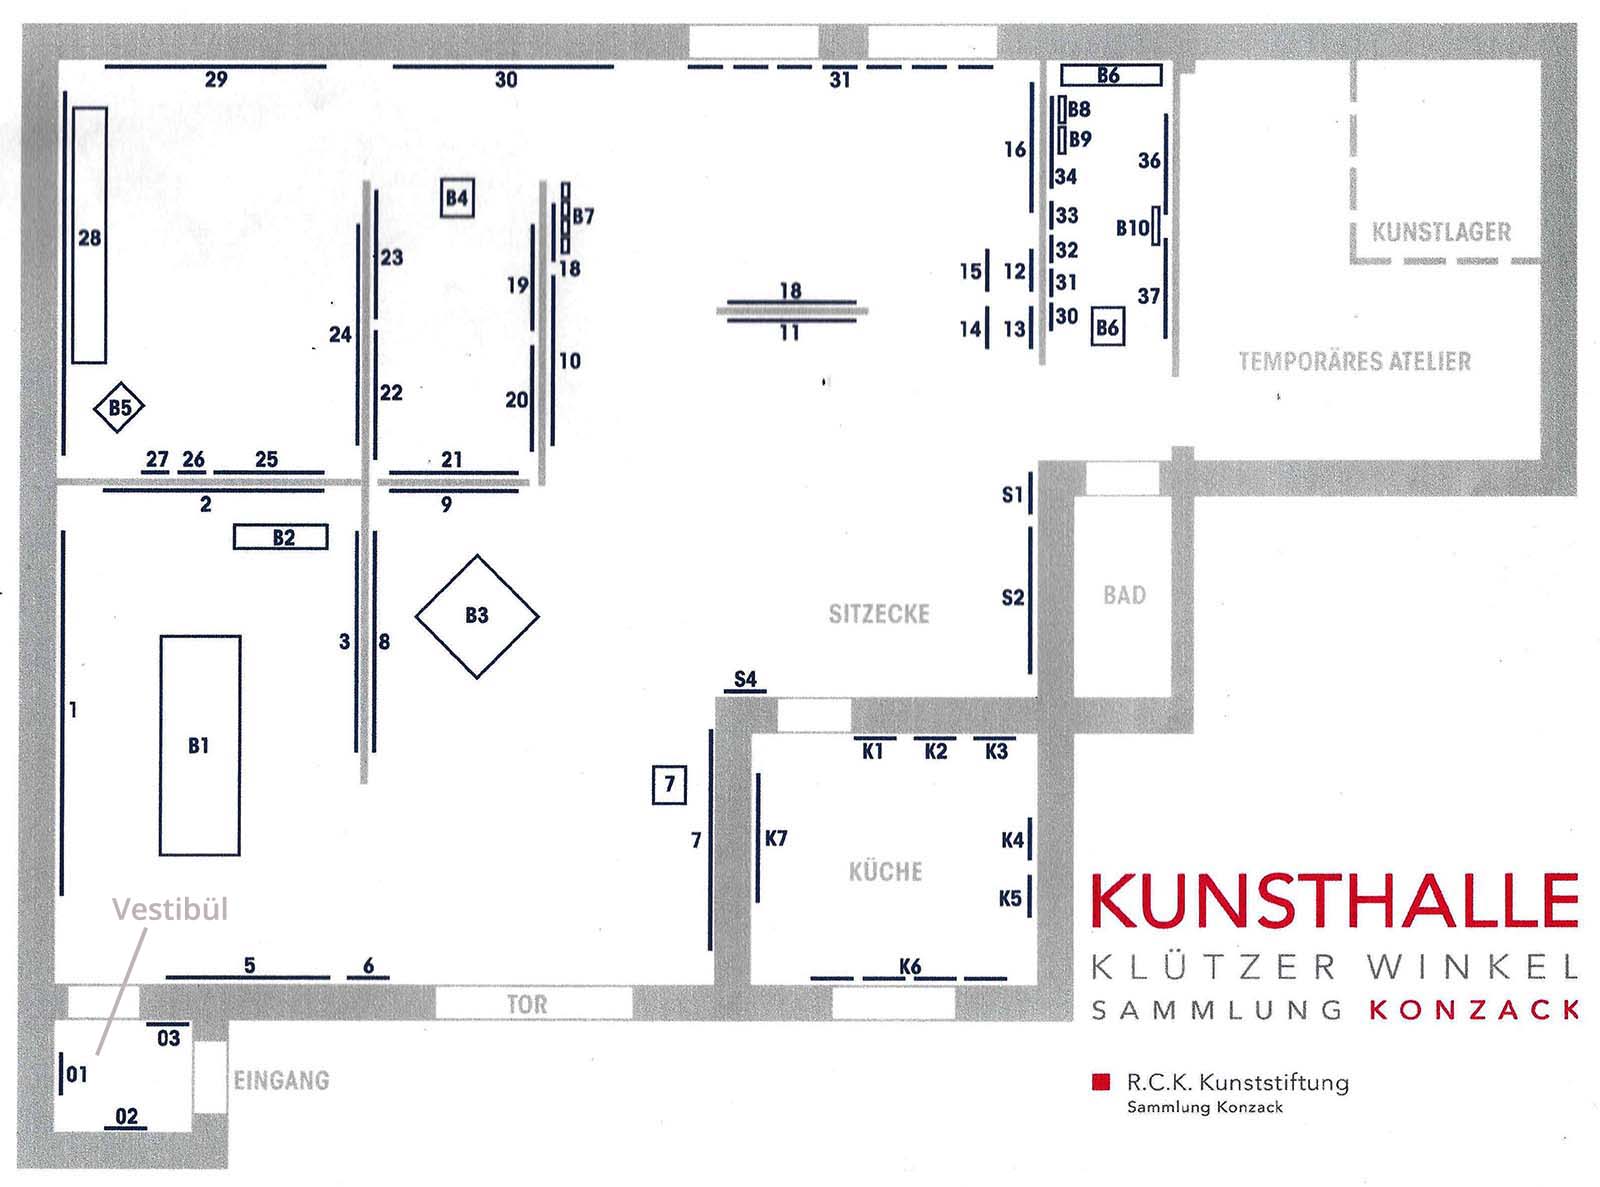 Sammlung Konzack Ausstellung: Eine erste Begegnung in der Kunsthalle